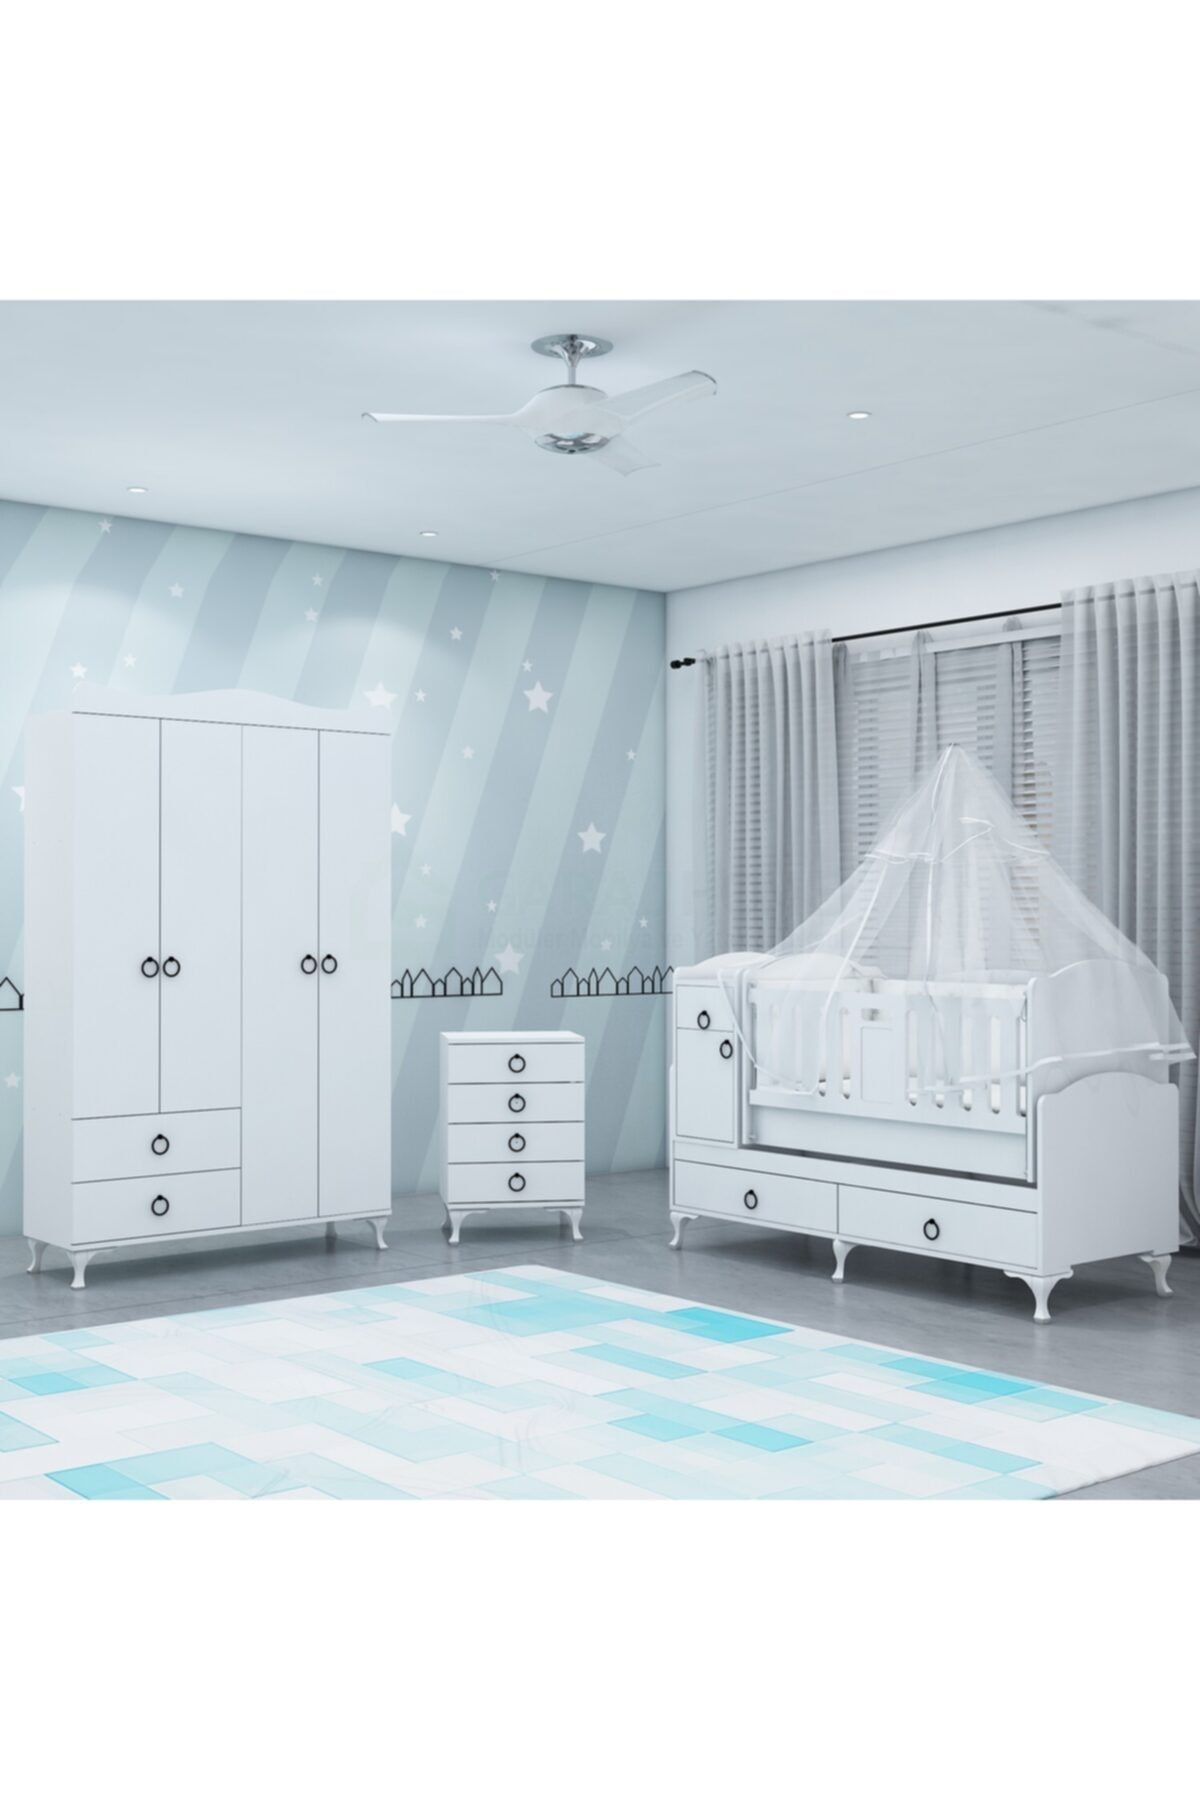 Garaj Home Sude Asansörlü Yıldız 4 Kapaklı Bebek Odası Takımı - Yatak Ve Uyku Seti Kombinli- Uykuseti Beyaz